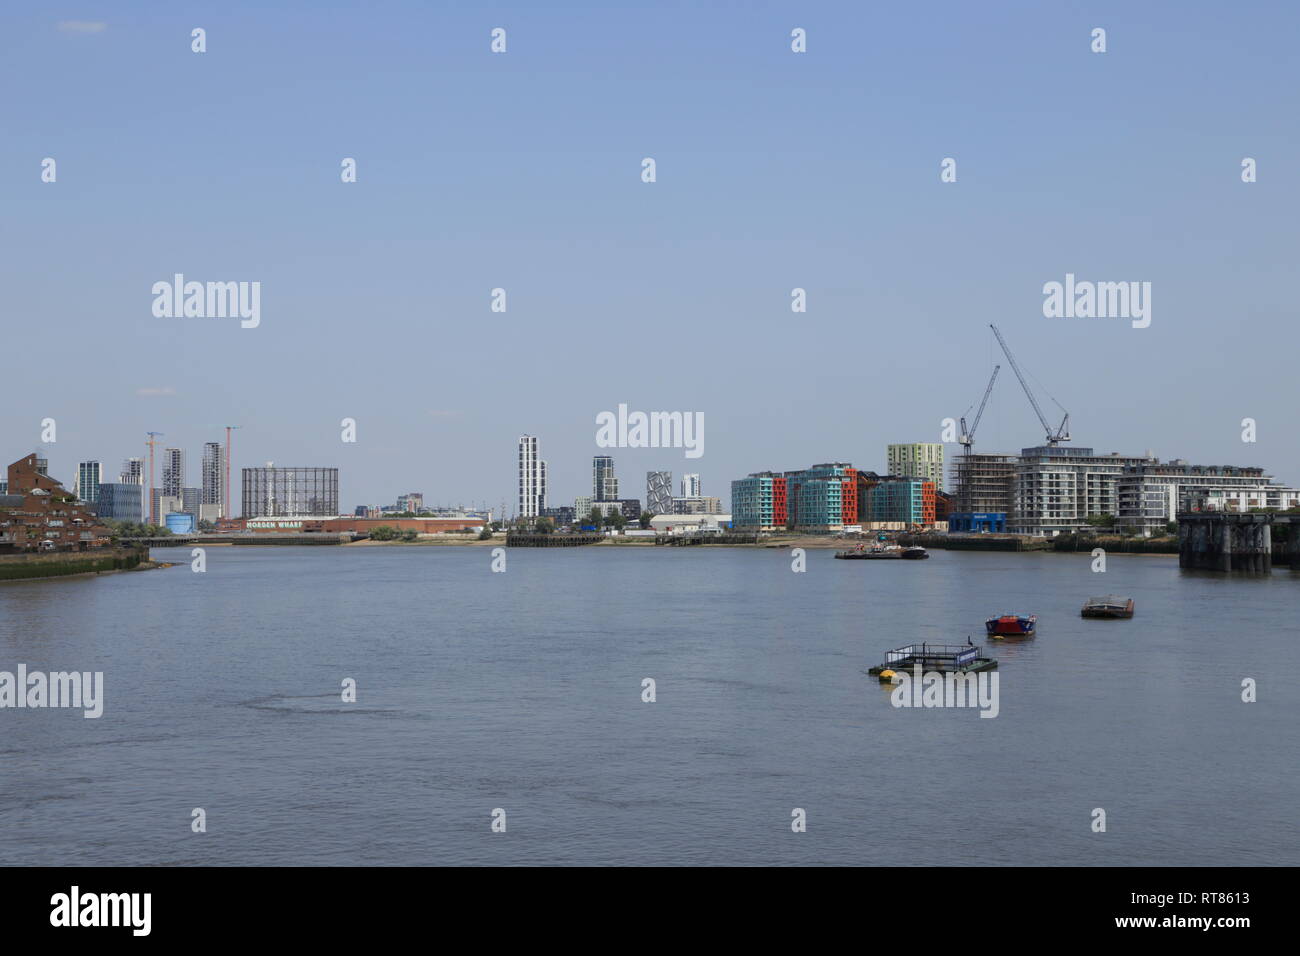 Edifici, incluso il mantello ottica, creare un urban skyline lungo il fiume Tamigi a Londra, come si vede da Greenwich, Regno Unito. Foto Stock